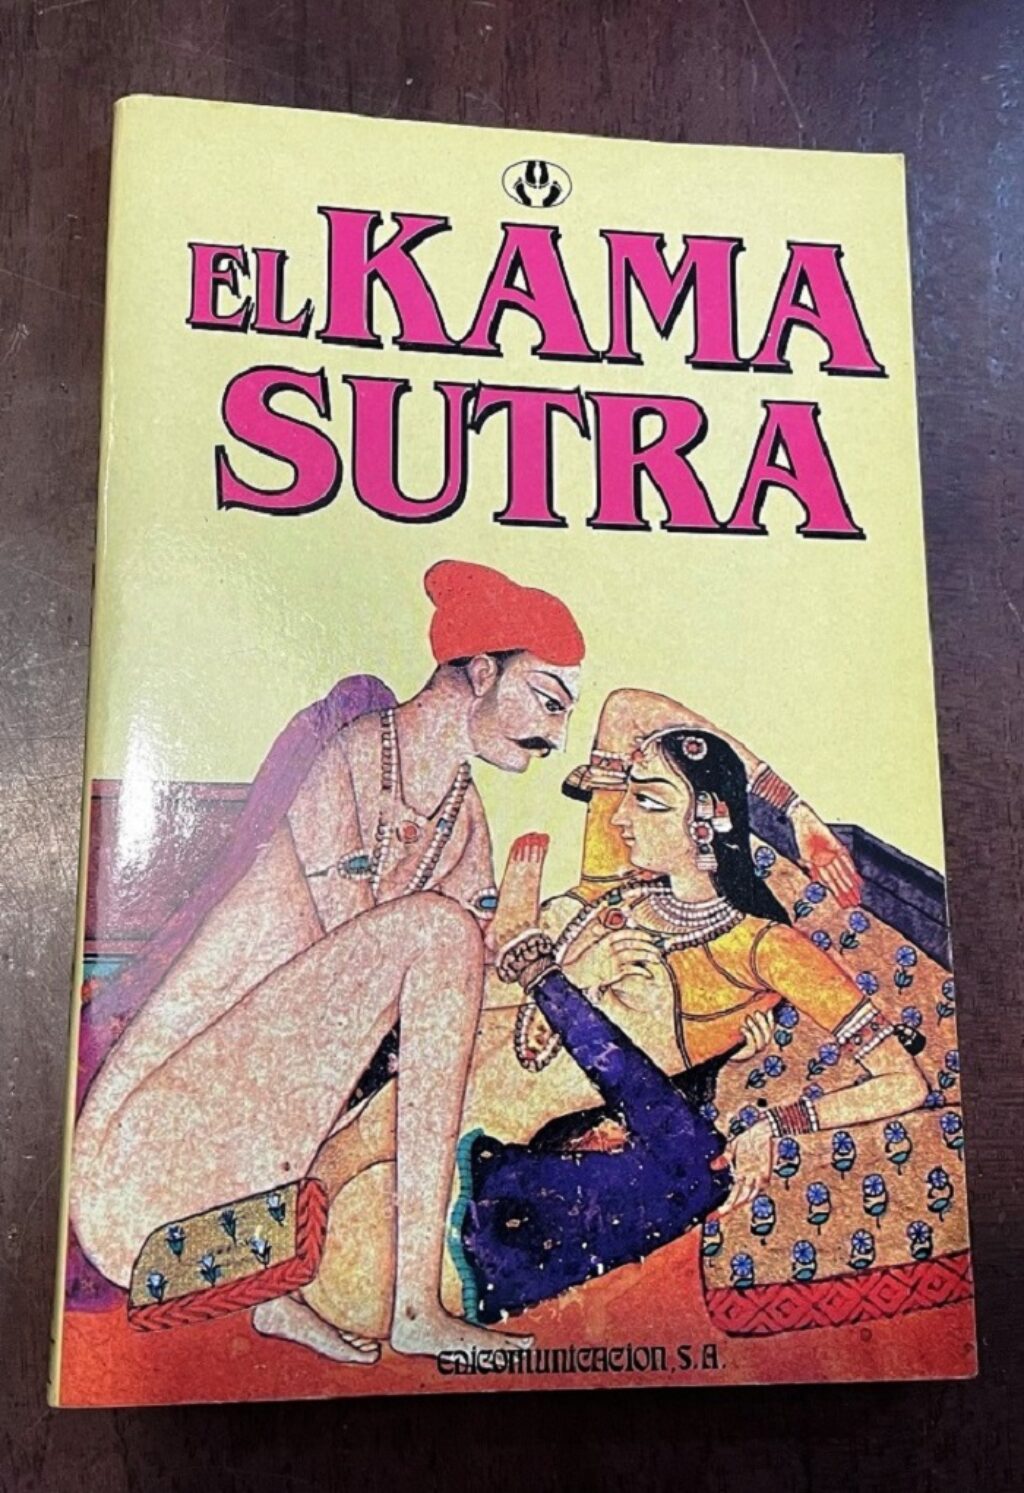 Portada de el Kama-sutra, el antiguo texto hinduista que trata sobre el comportamiento sexual humano.